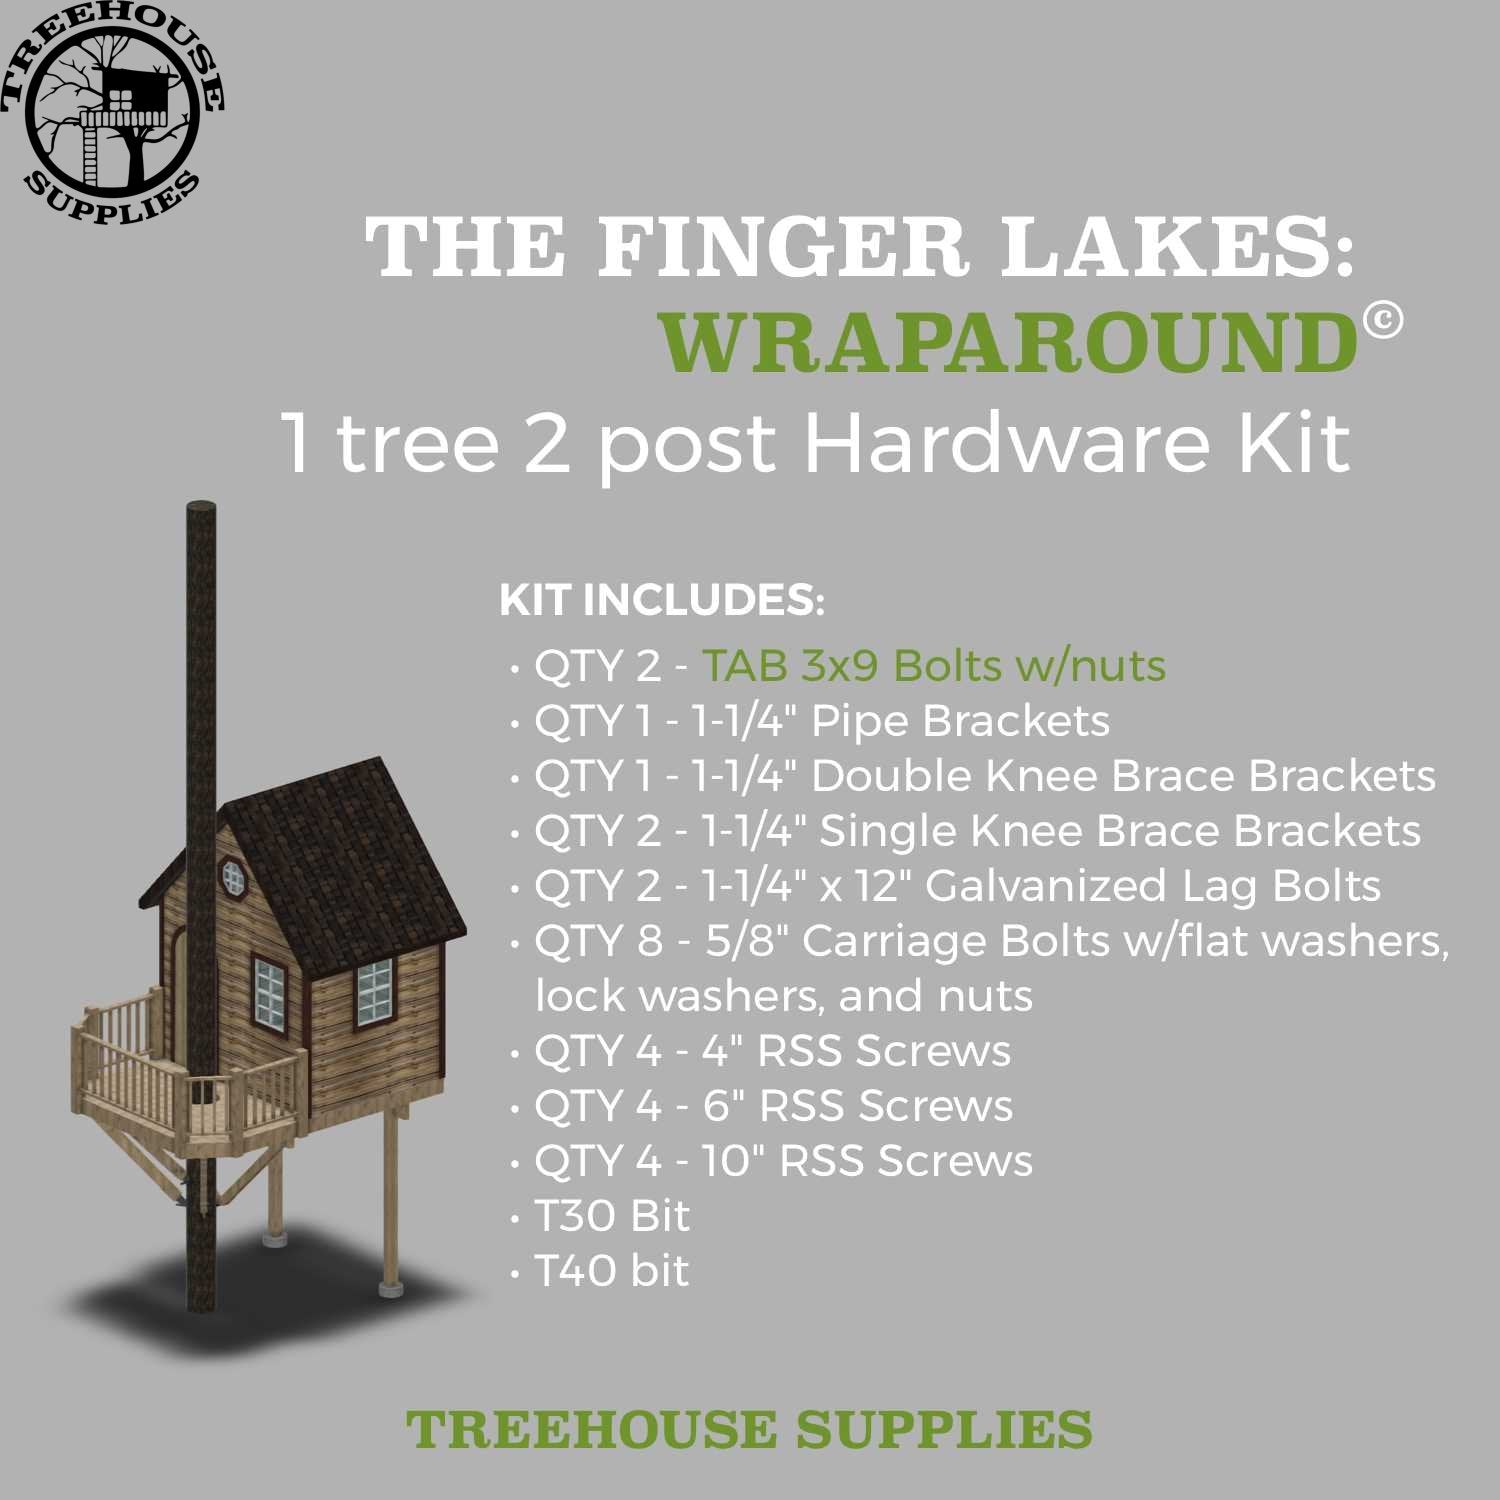 THE FINGER LAKES: WRAPAROUND © 1 tree 2 post hardware kit